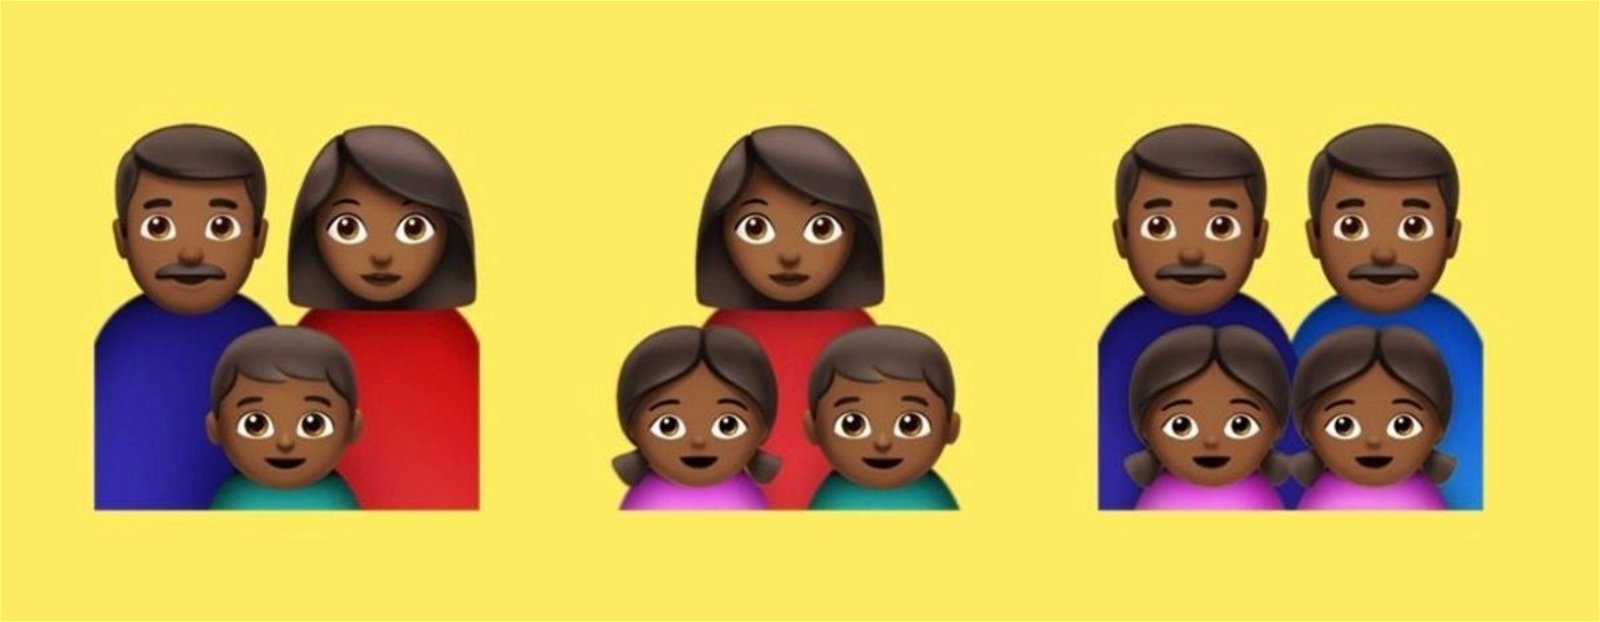 Parejas interraciales, flamencos y sillas de ruedas: nuevos emojis para 2019